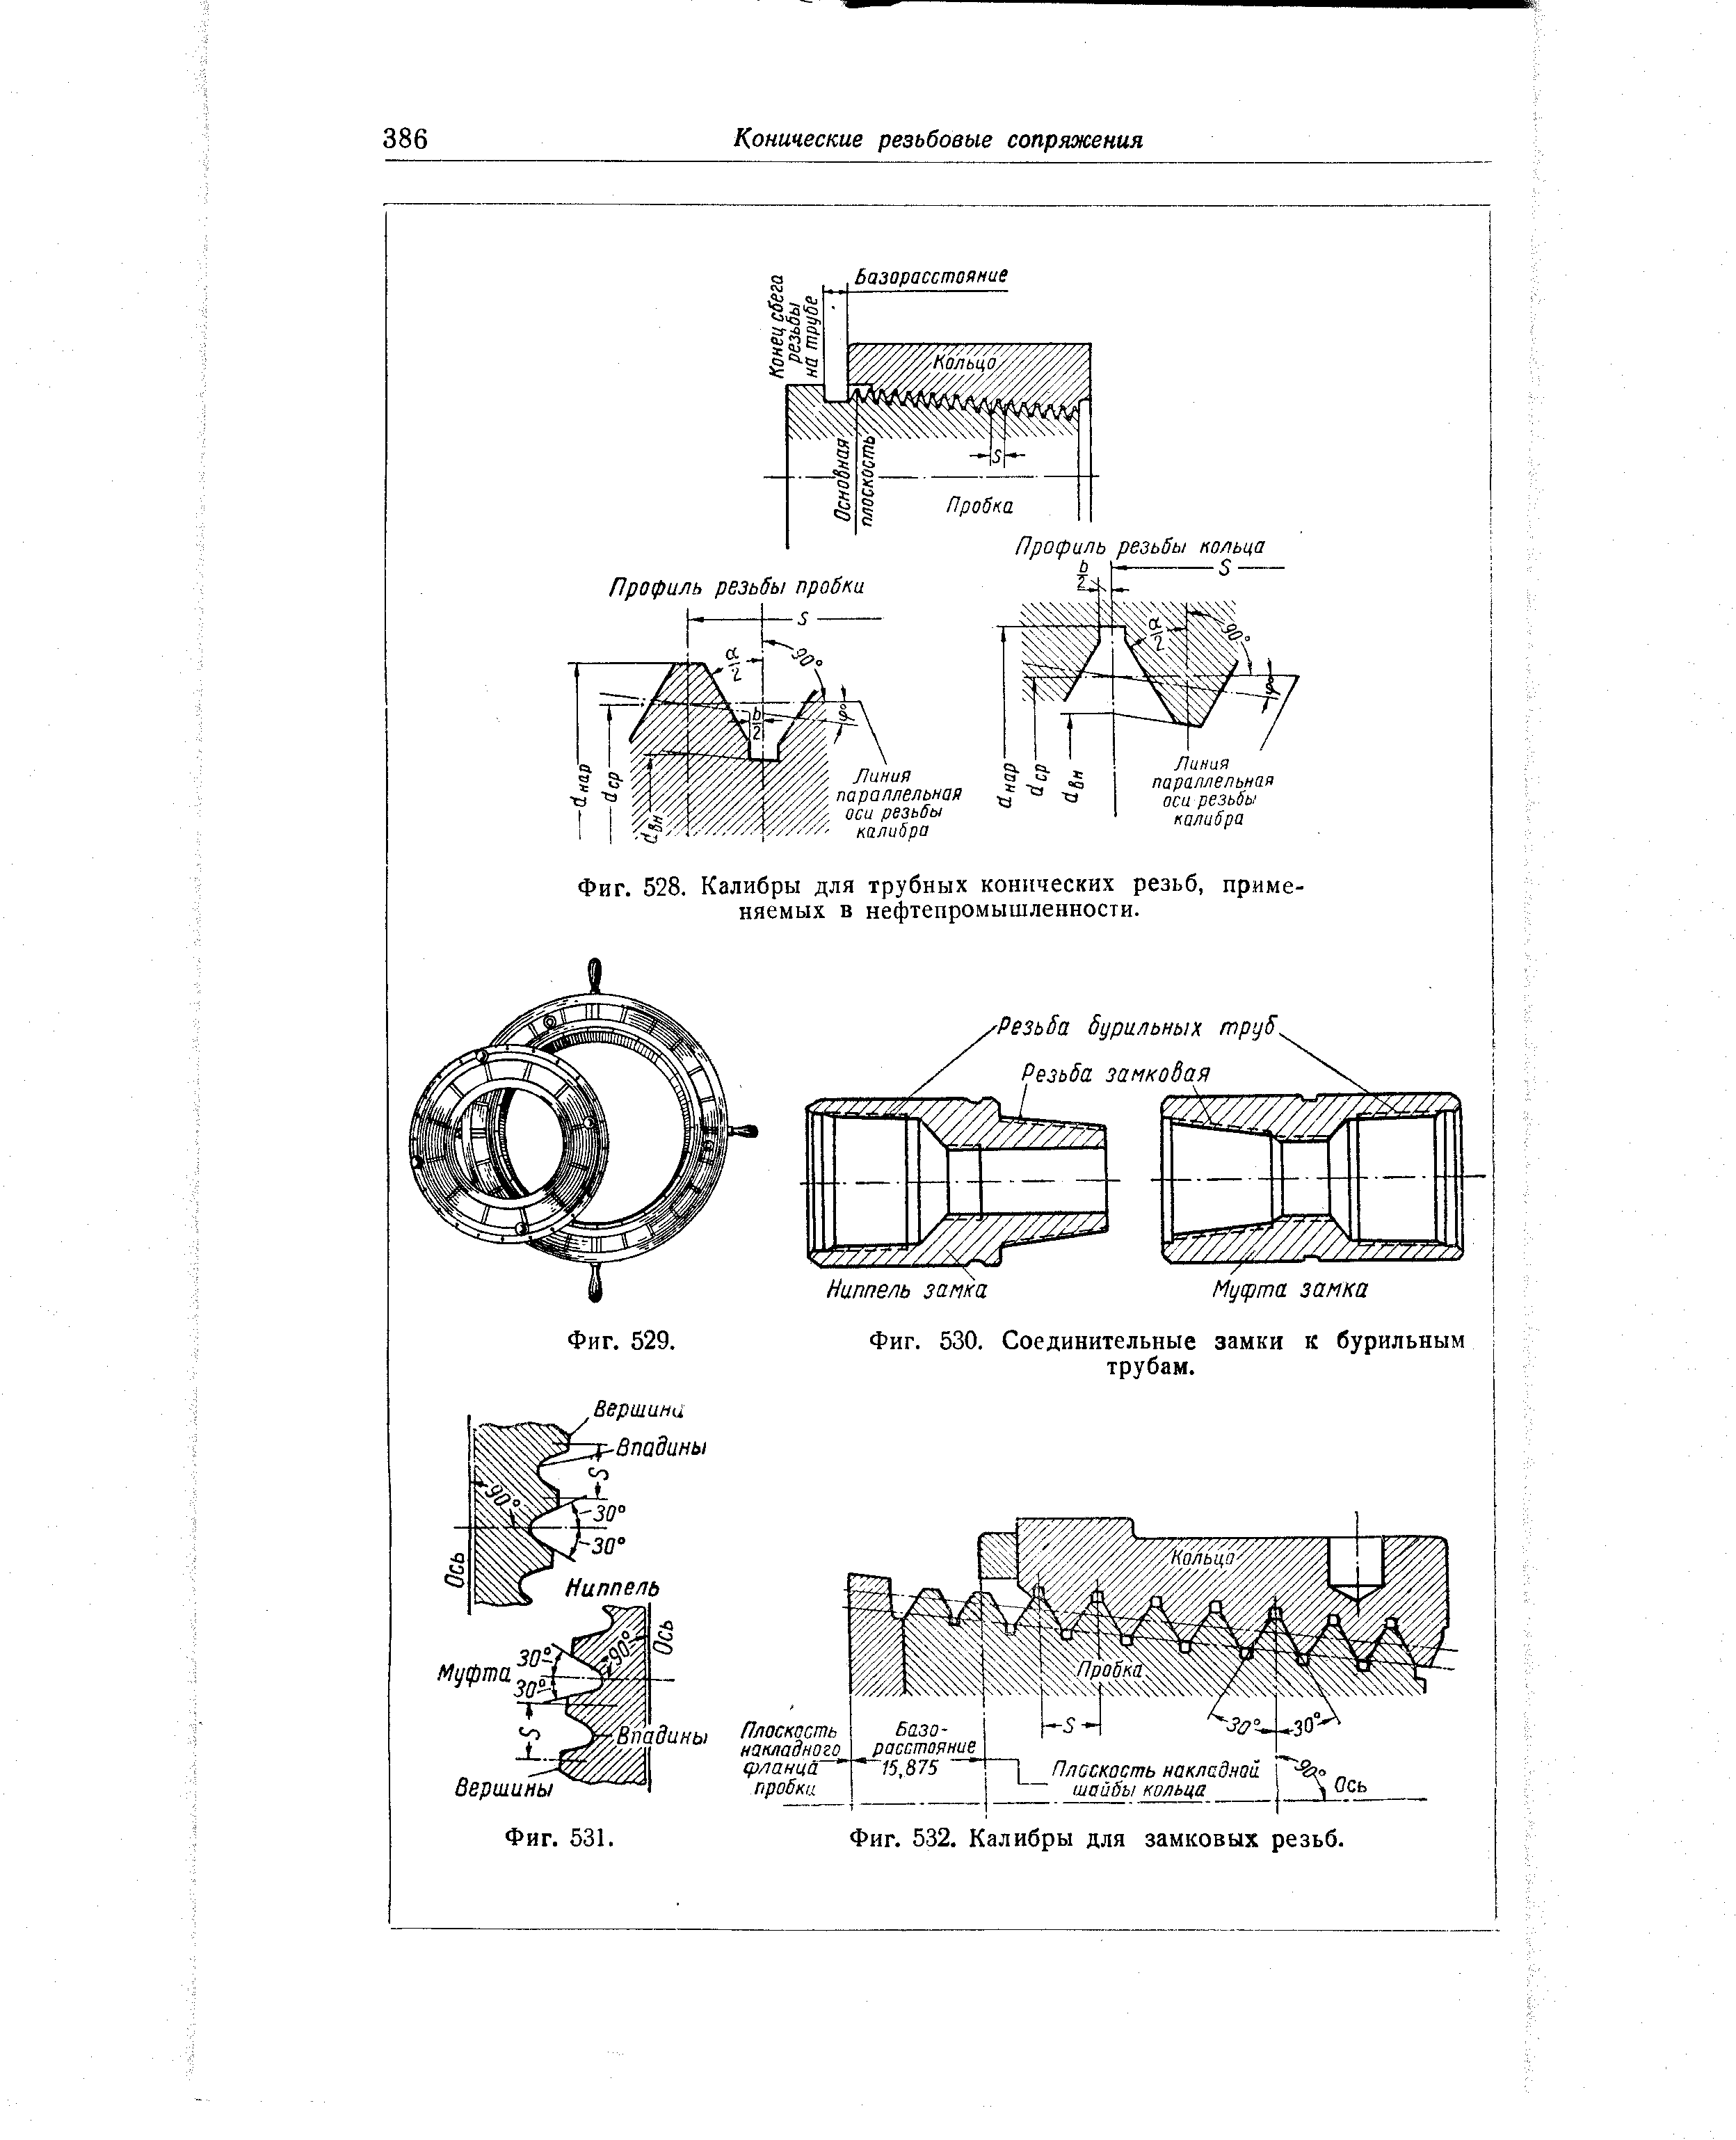 Фиг. 528. Калибры для трубных коннческих резьб, применяемых в нефтепромышленности.
